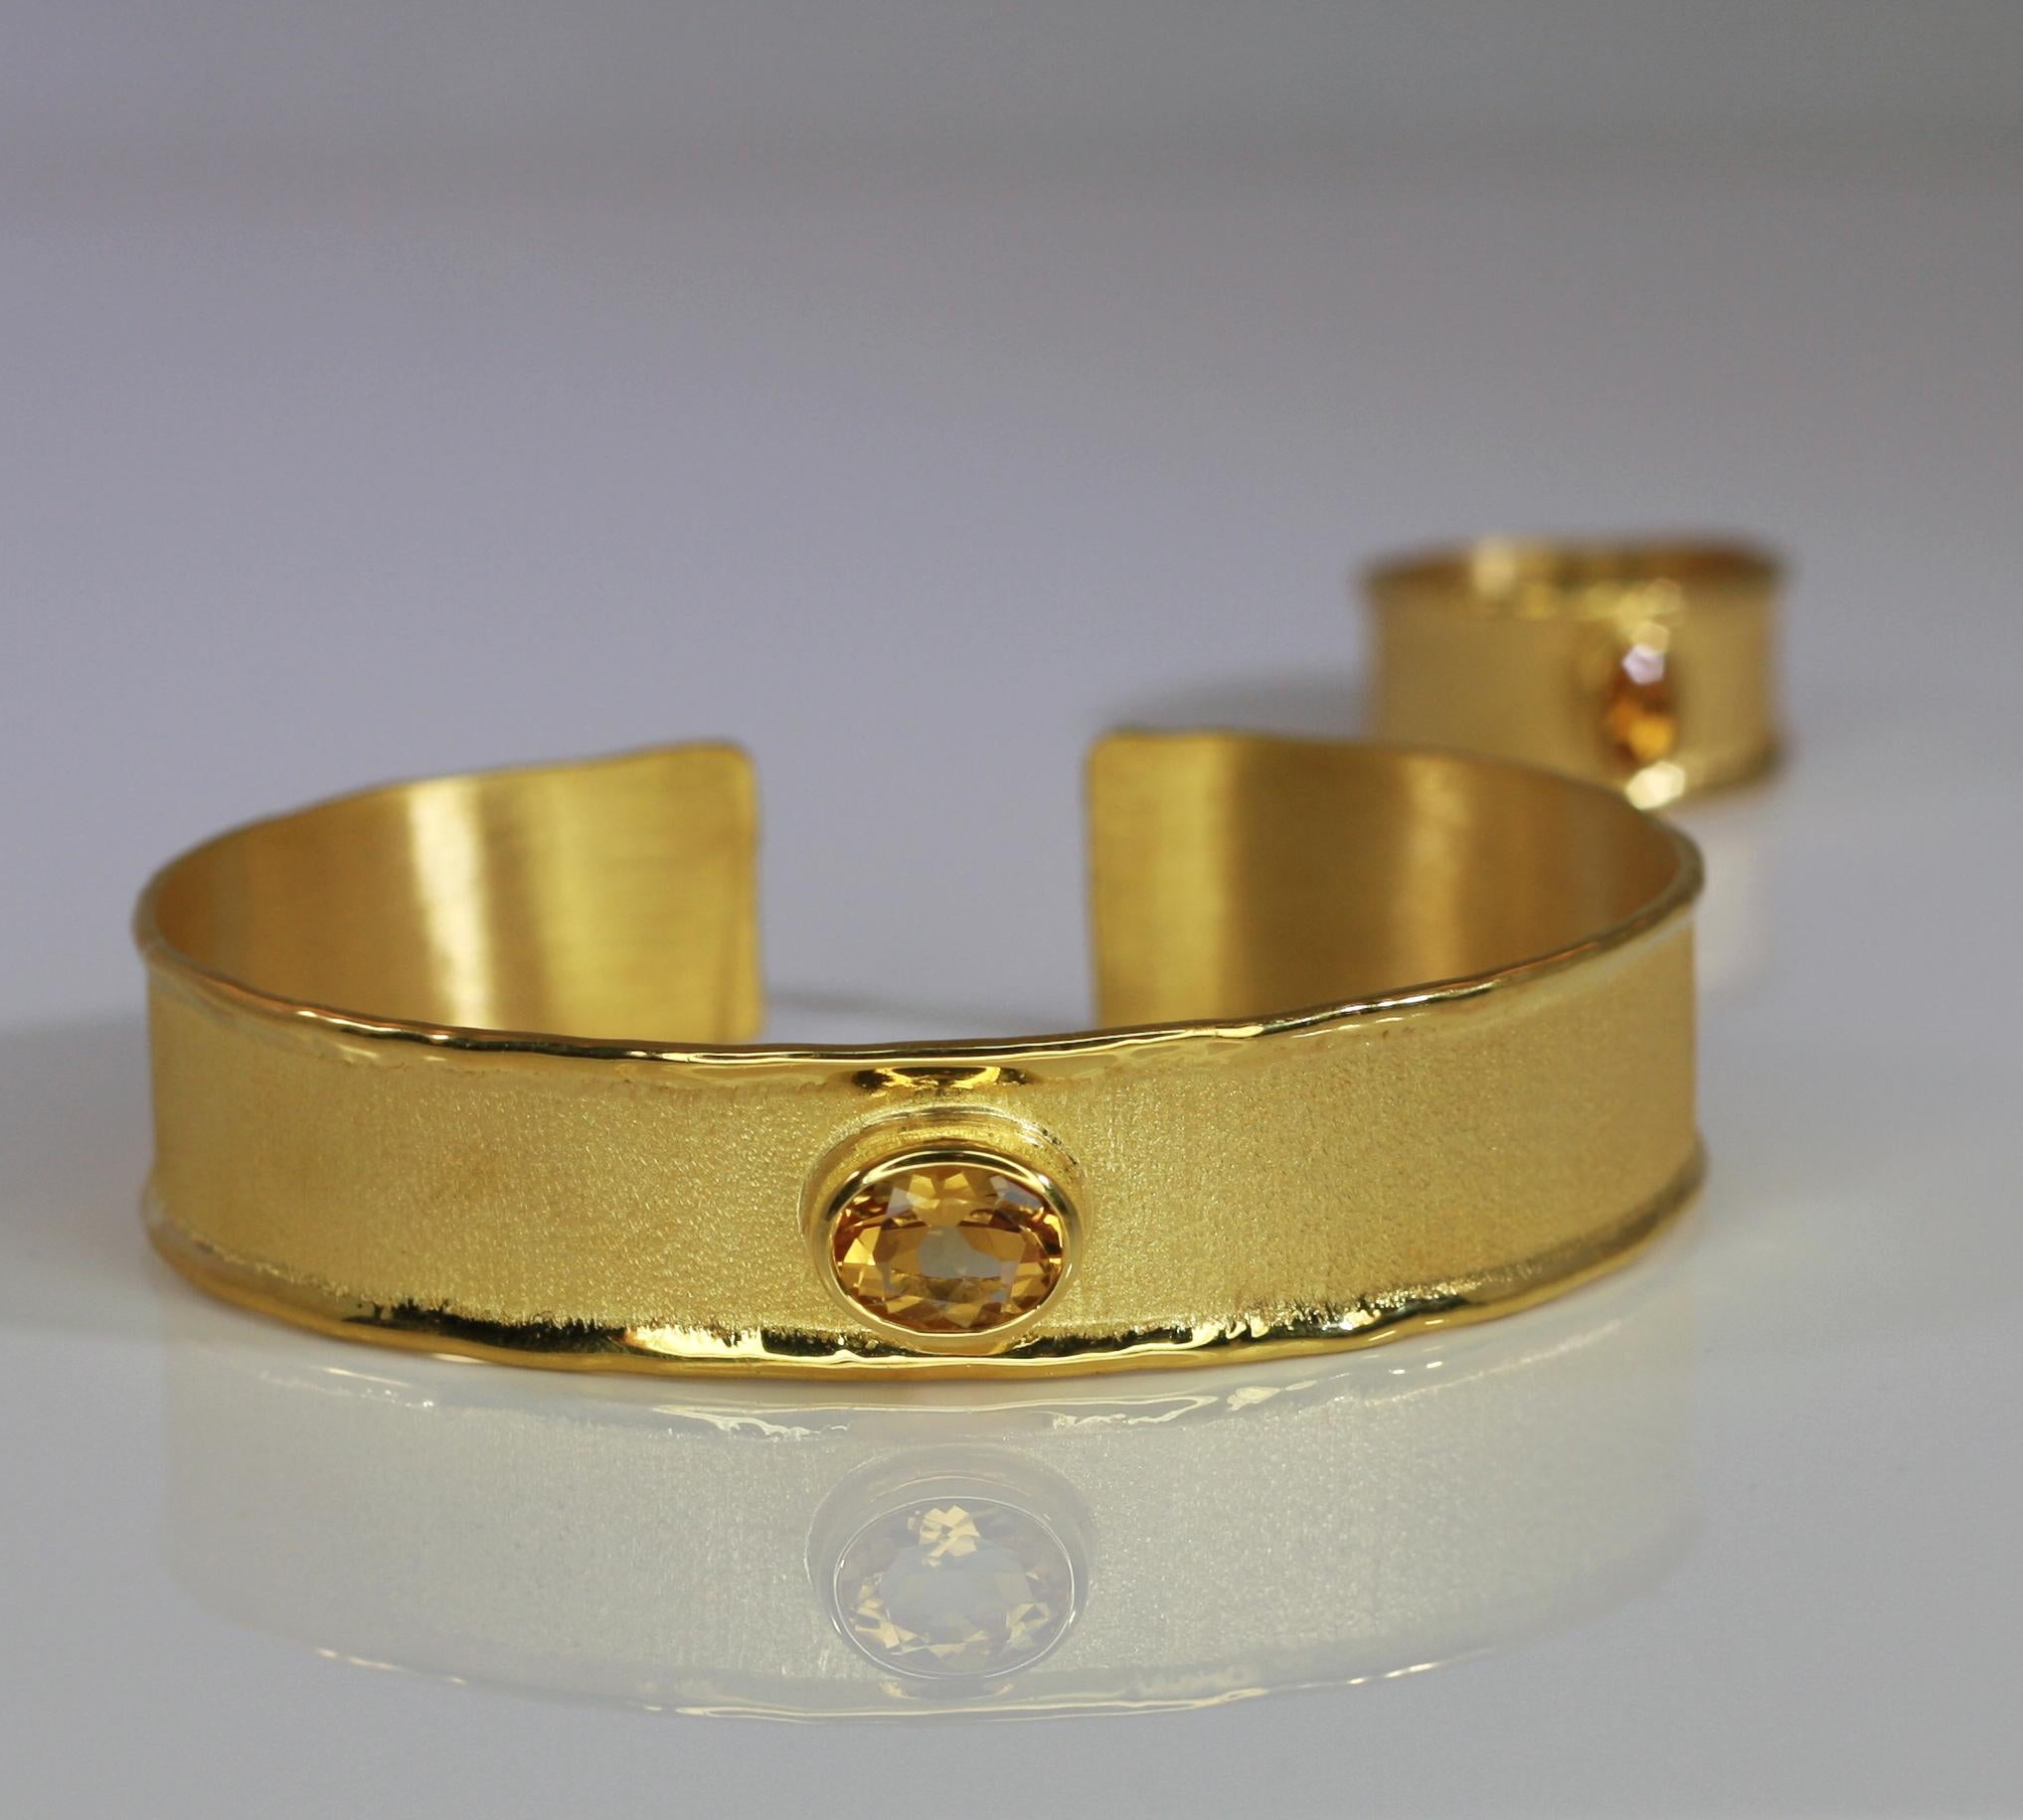 Dieses Armband von Yianni Creations wird in Griechenland aus 18 Karat Gold handgefertigt und mit 1,75 Karat Citrin besetzt. Der einzigartige Look entsteht durch die Verwendung alter Handwerkstechniken - gebürstete Textur und von der Natur